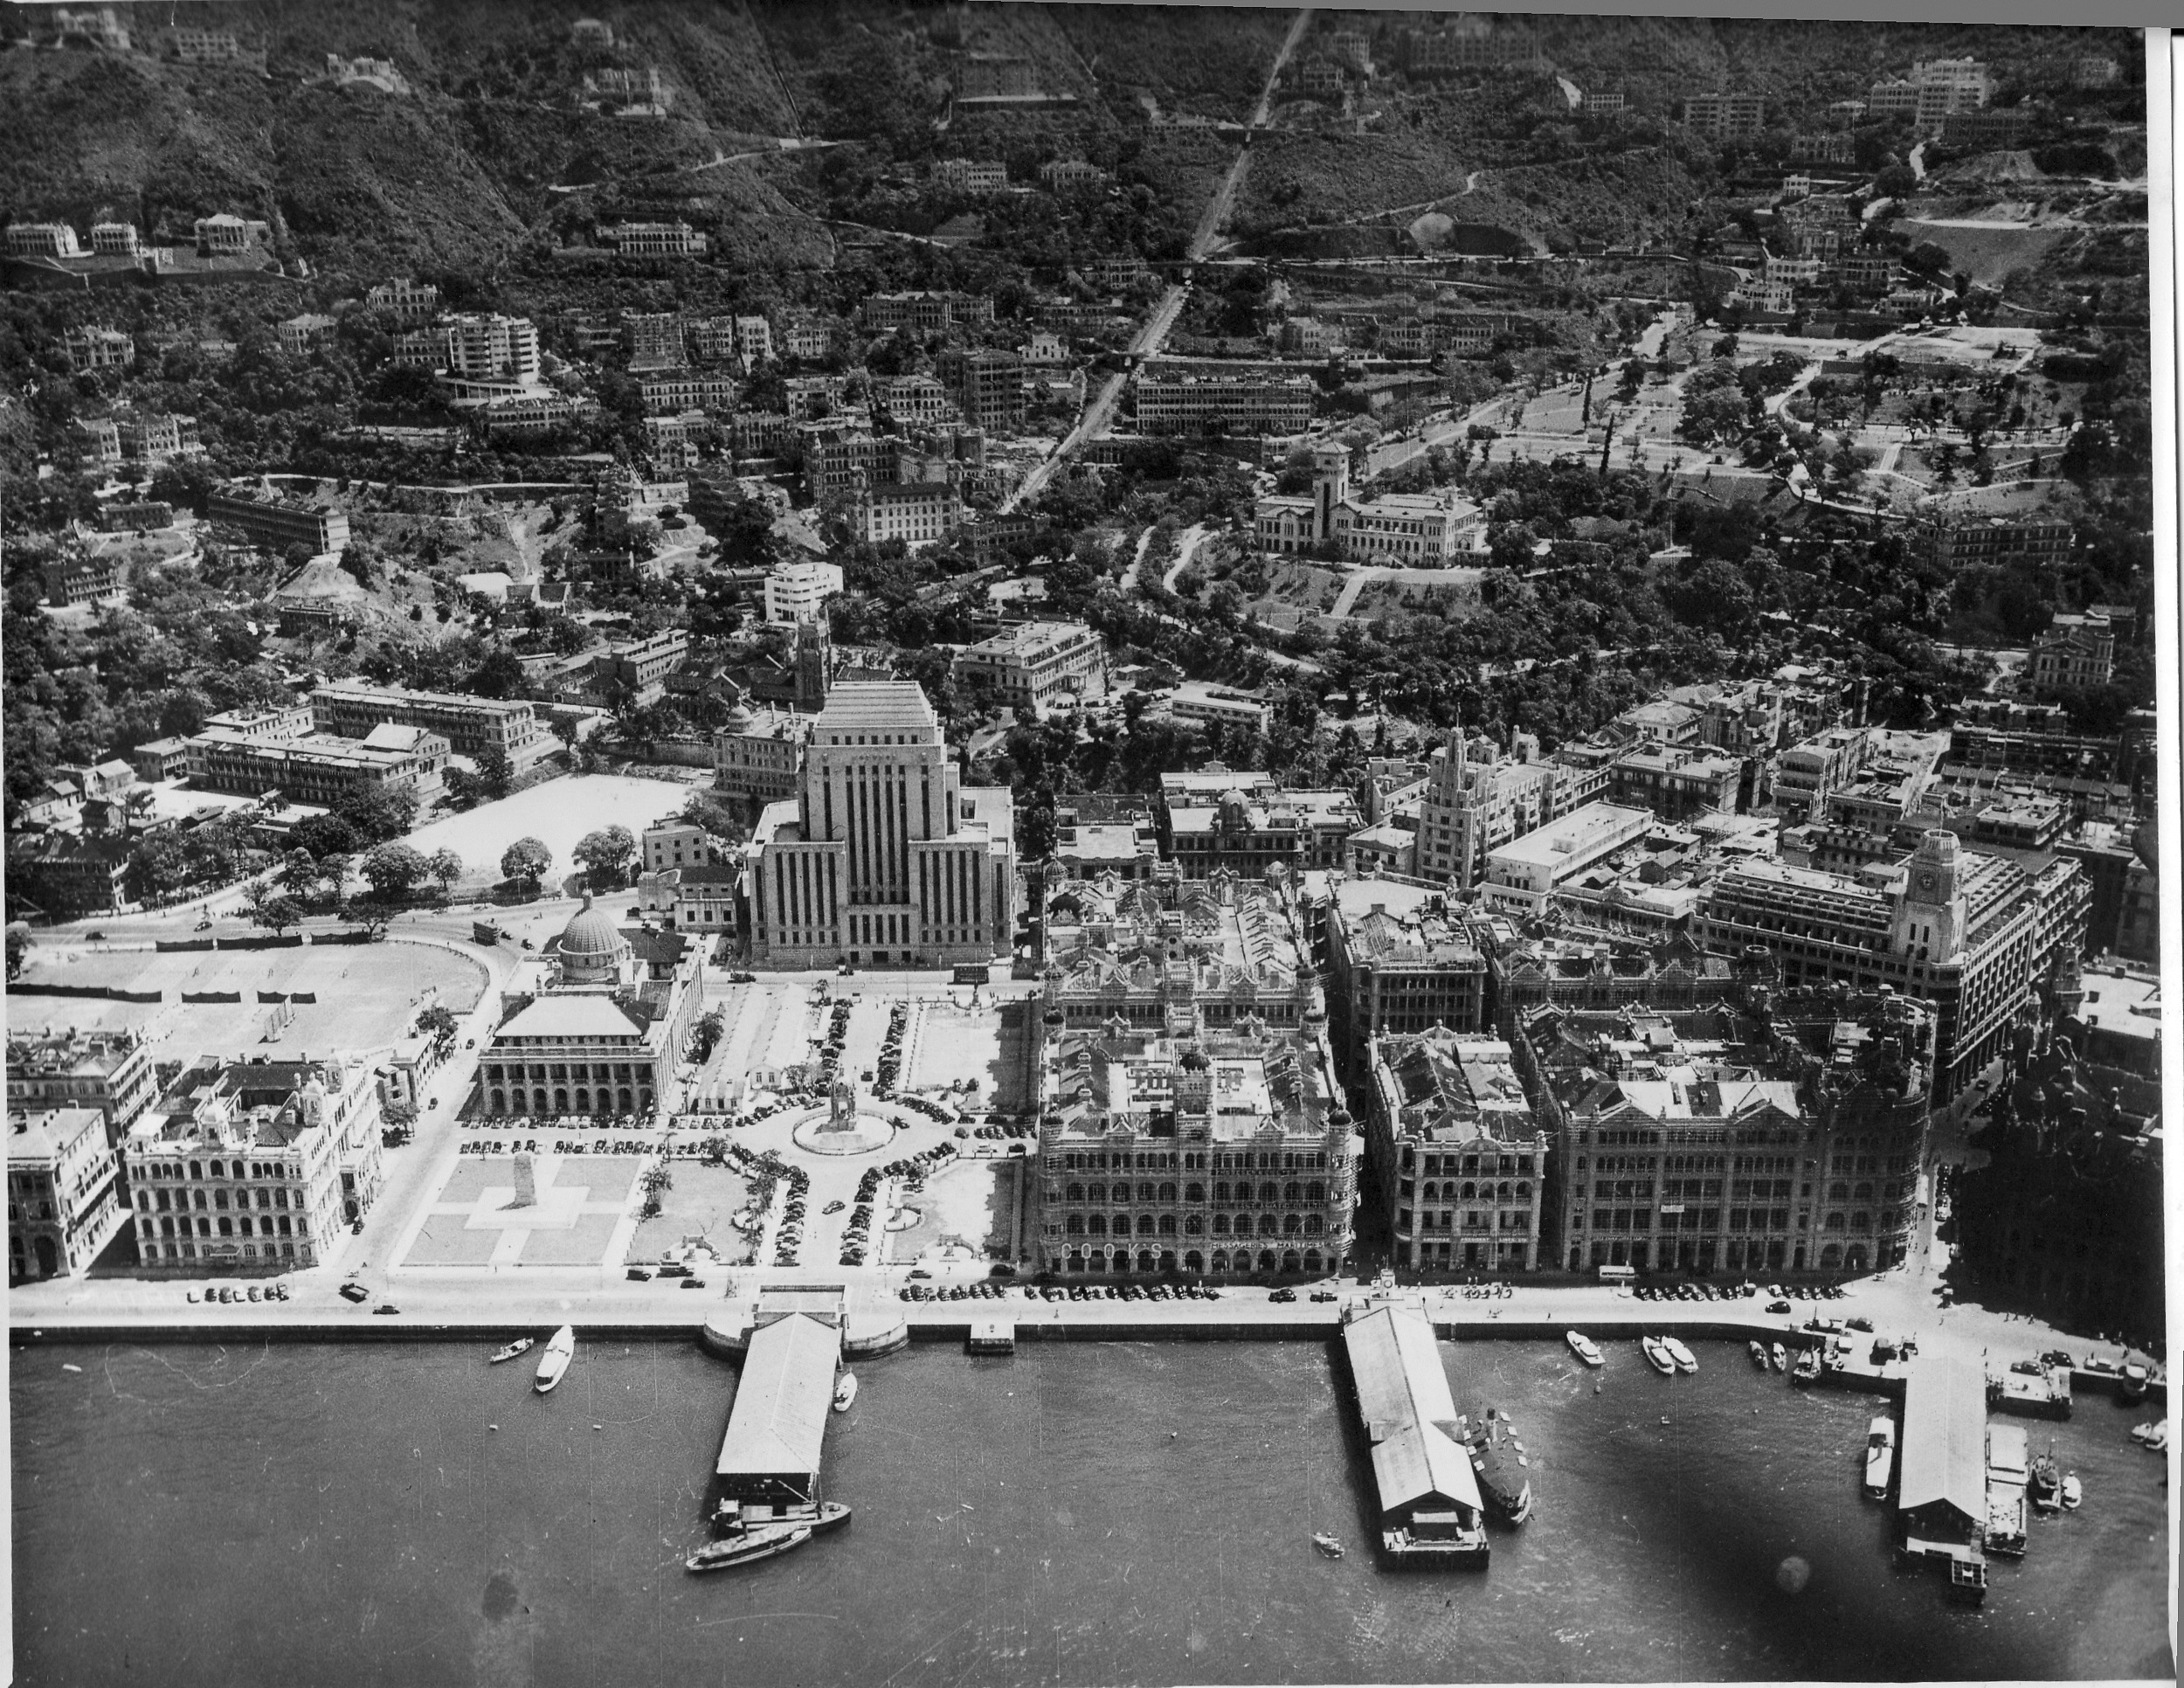 The Hong Kong and Shanghai Bank dominates central Hong Kong, postwar photo